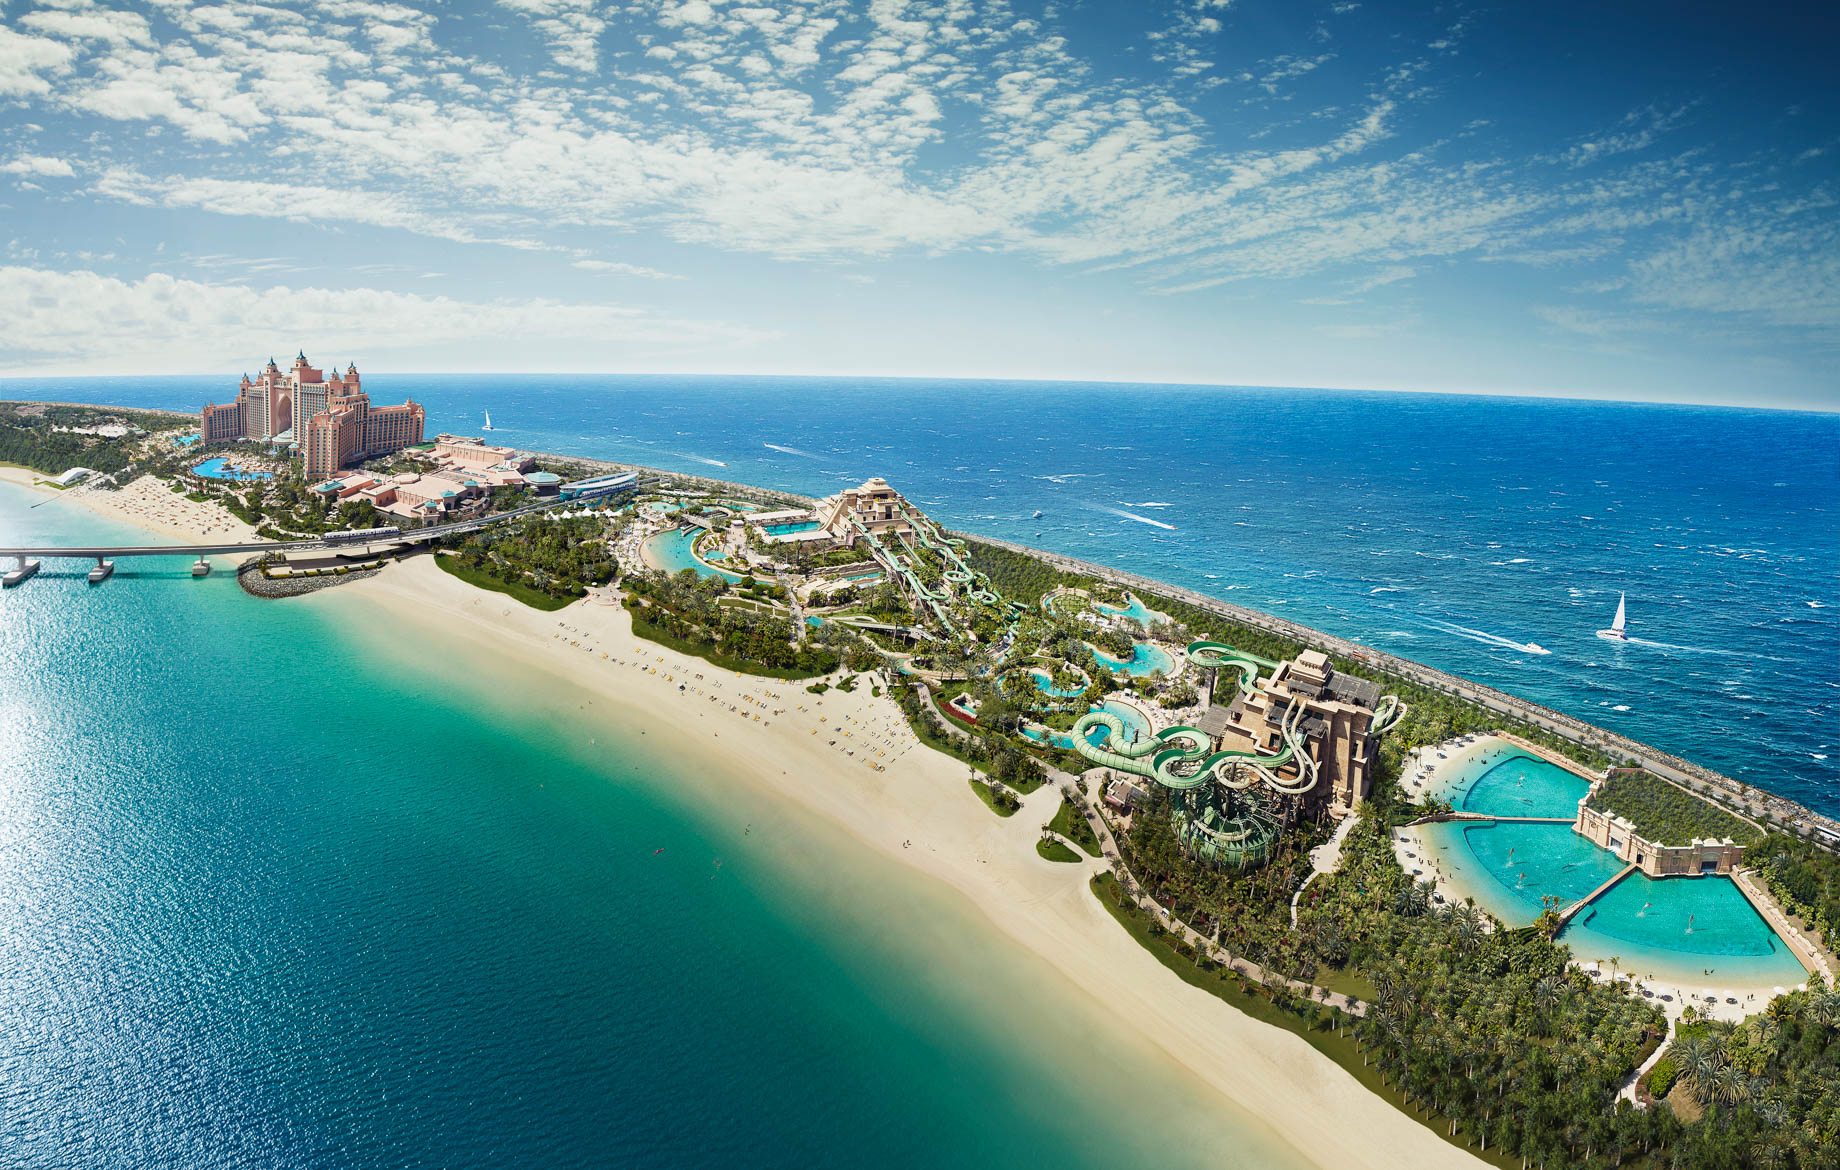 Atlantis The Palm Resort – Crescent Rd, Dubai, UAE – Aquaventure Waterpark Aerial